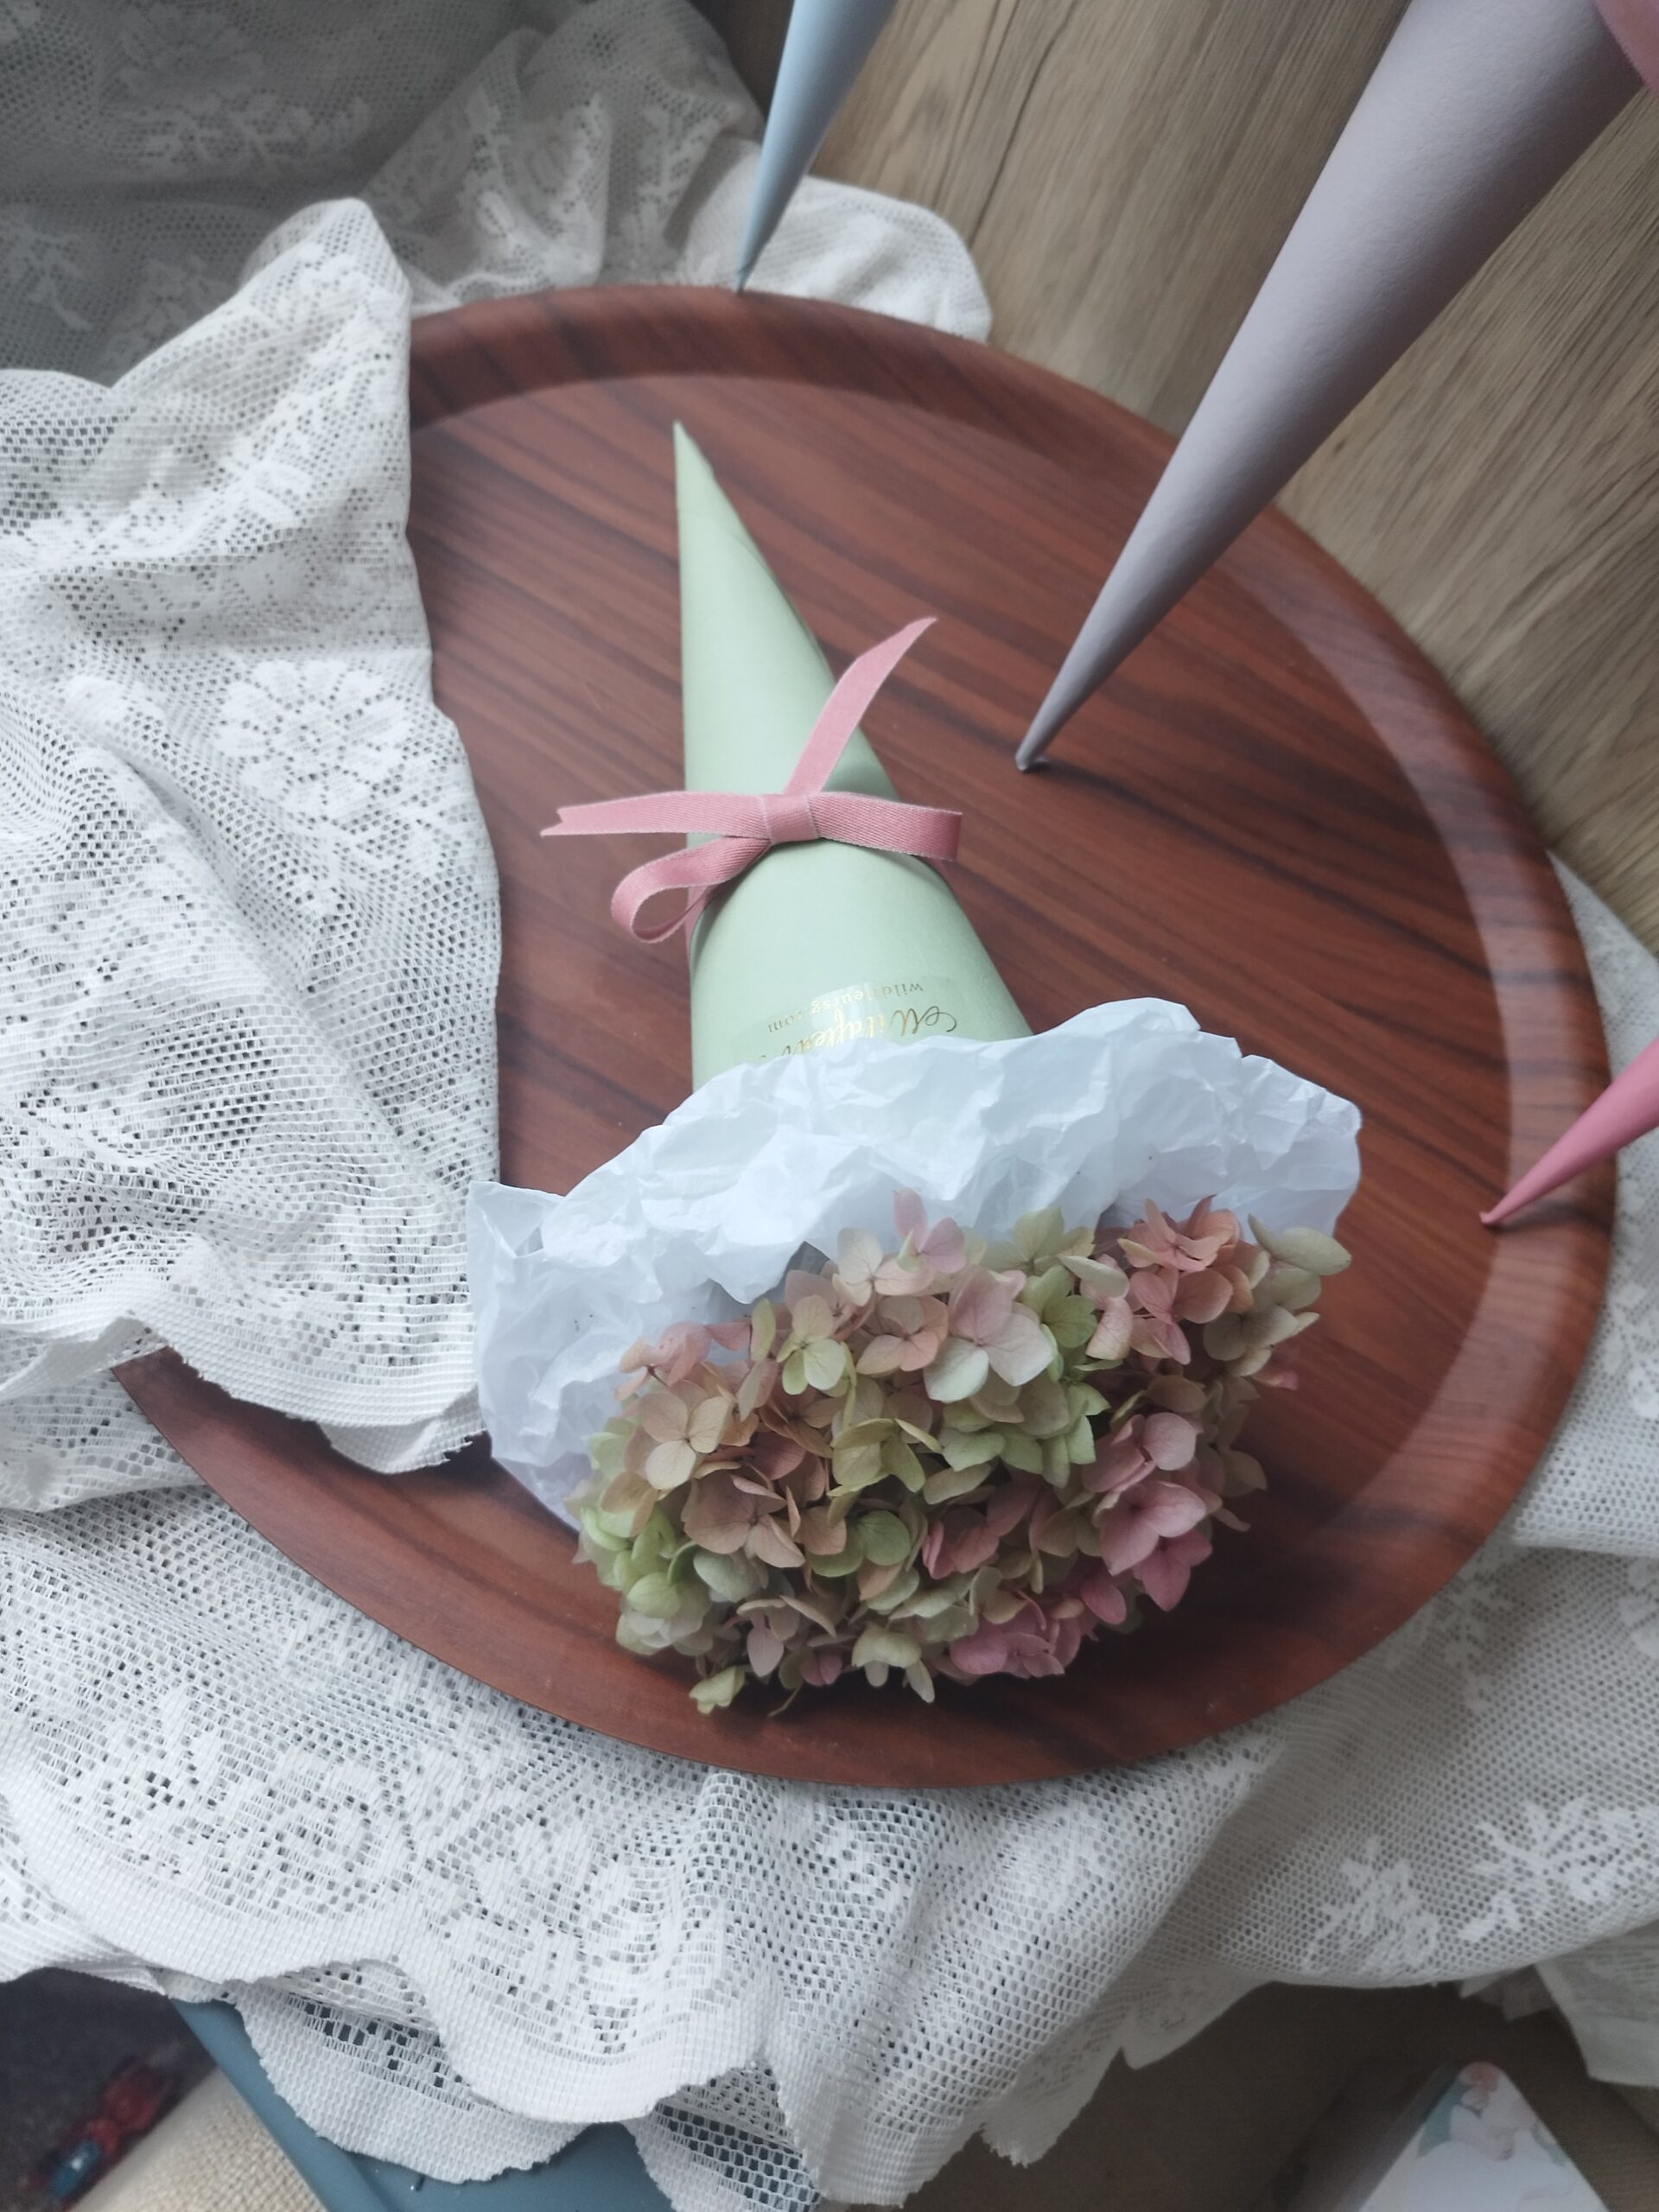 Ice-cream Hydrangea Bouquet